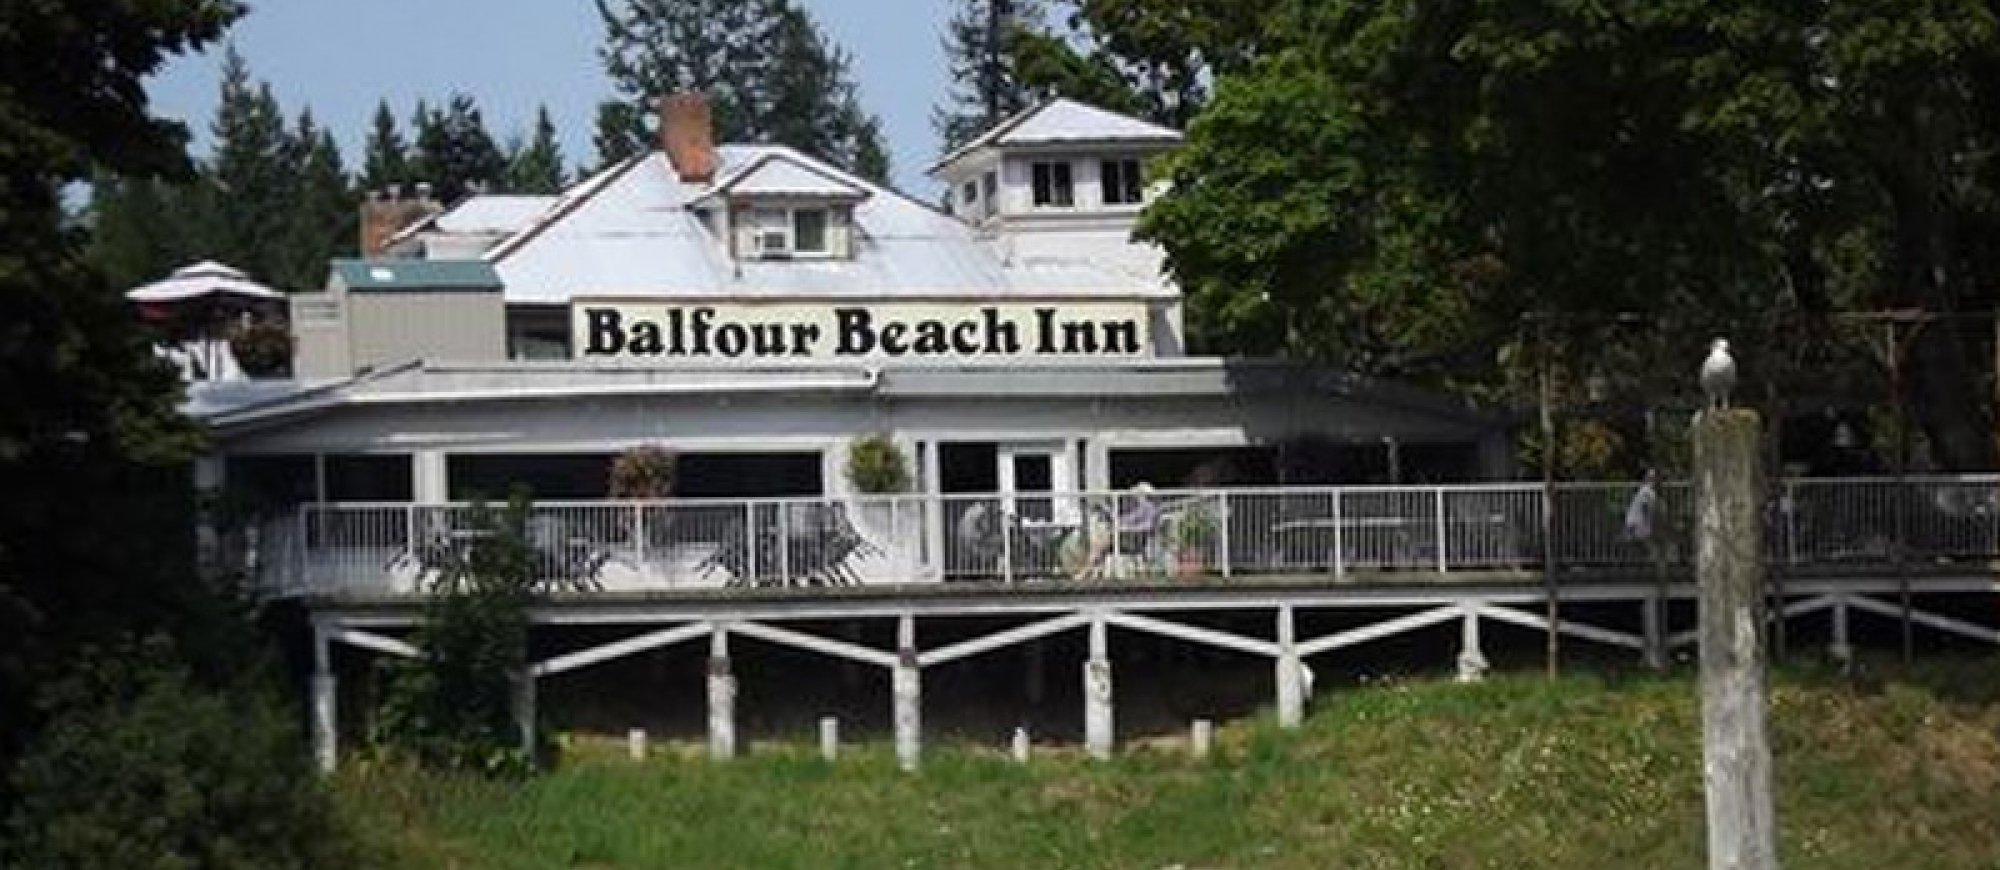 Balfour Beach Inn